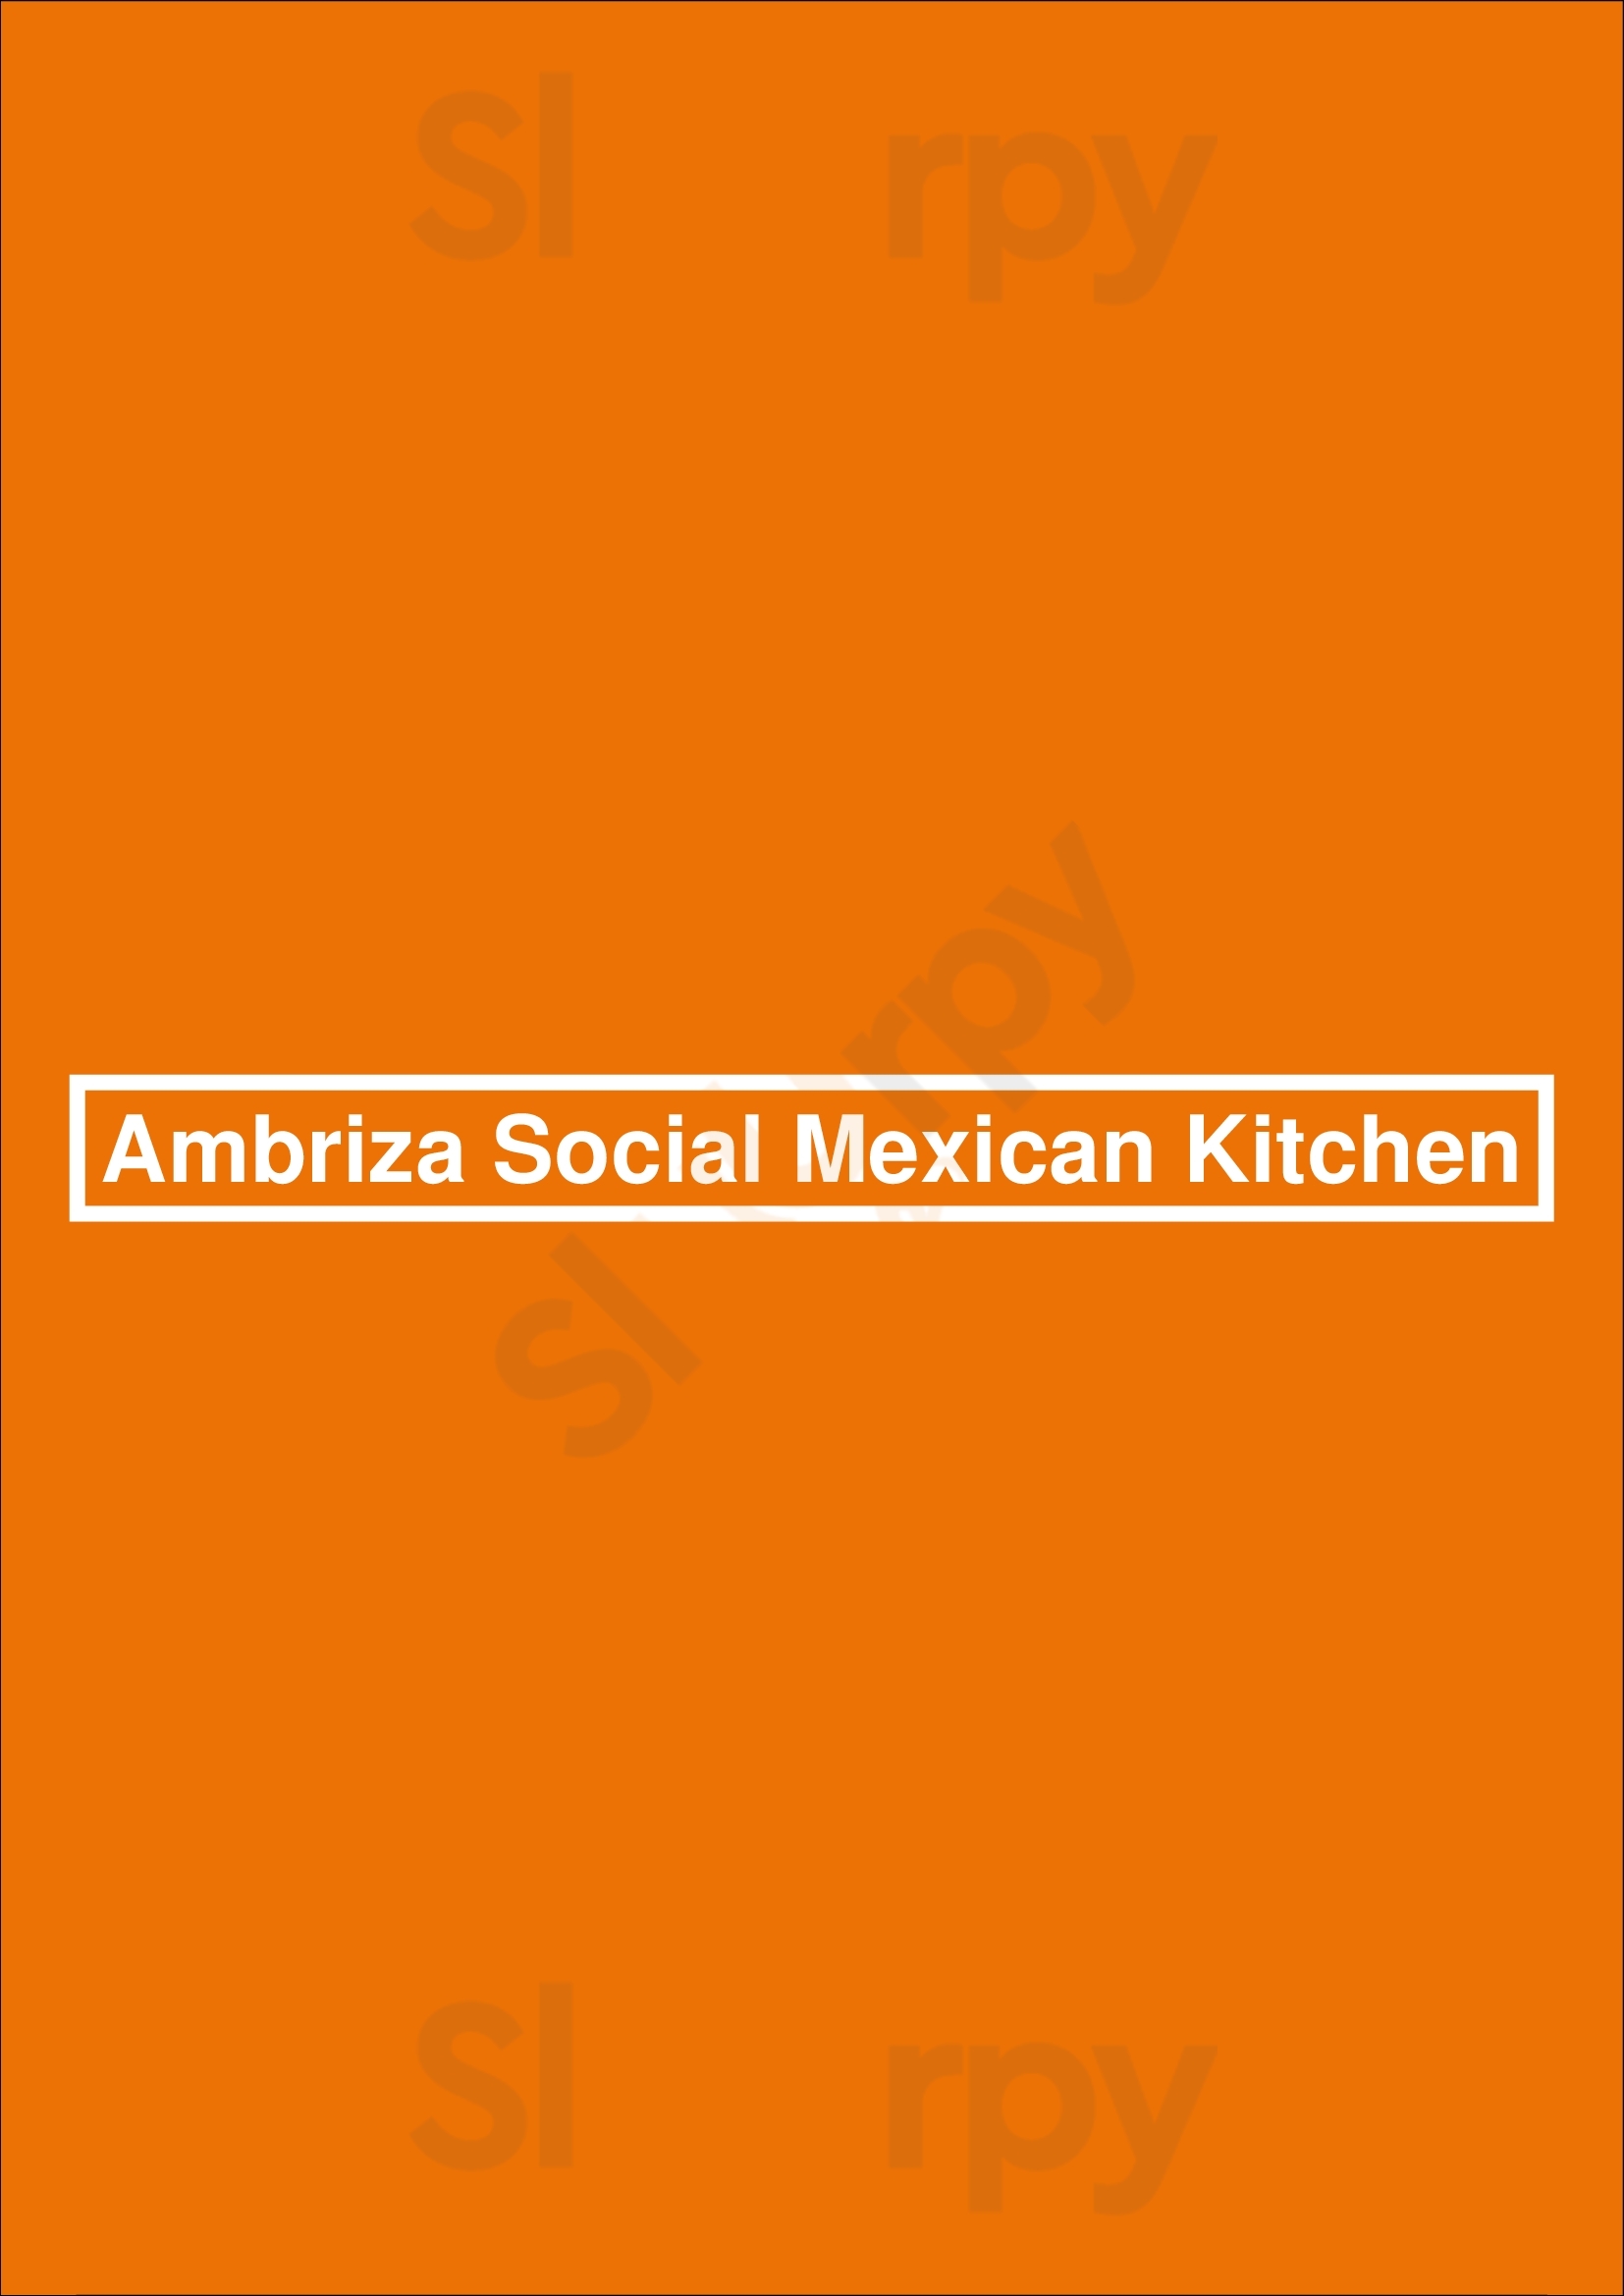 Ambriza Social Mexican Kitchen Houston Menu - 1